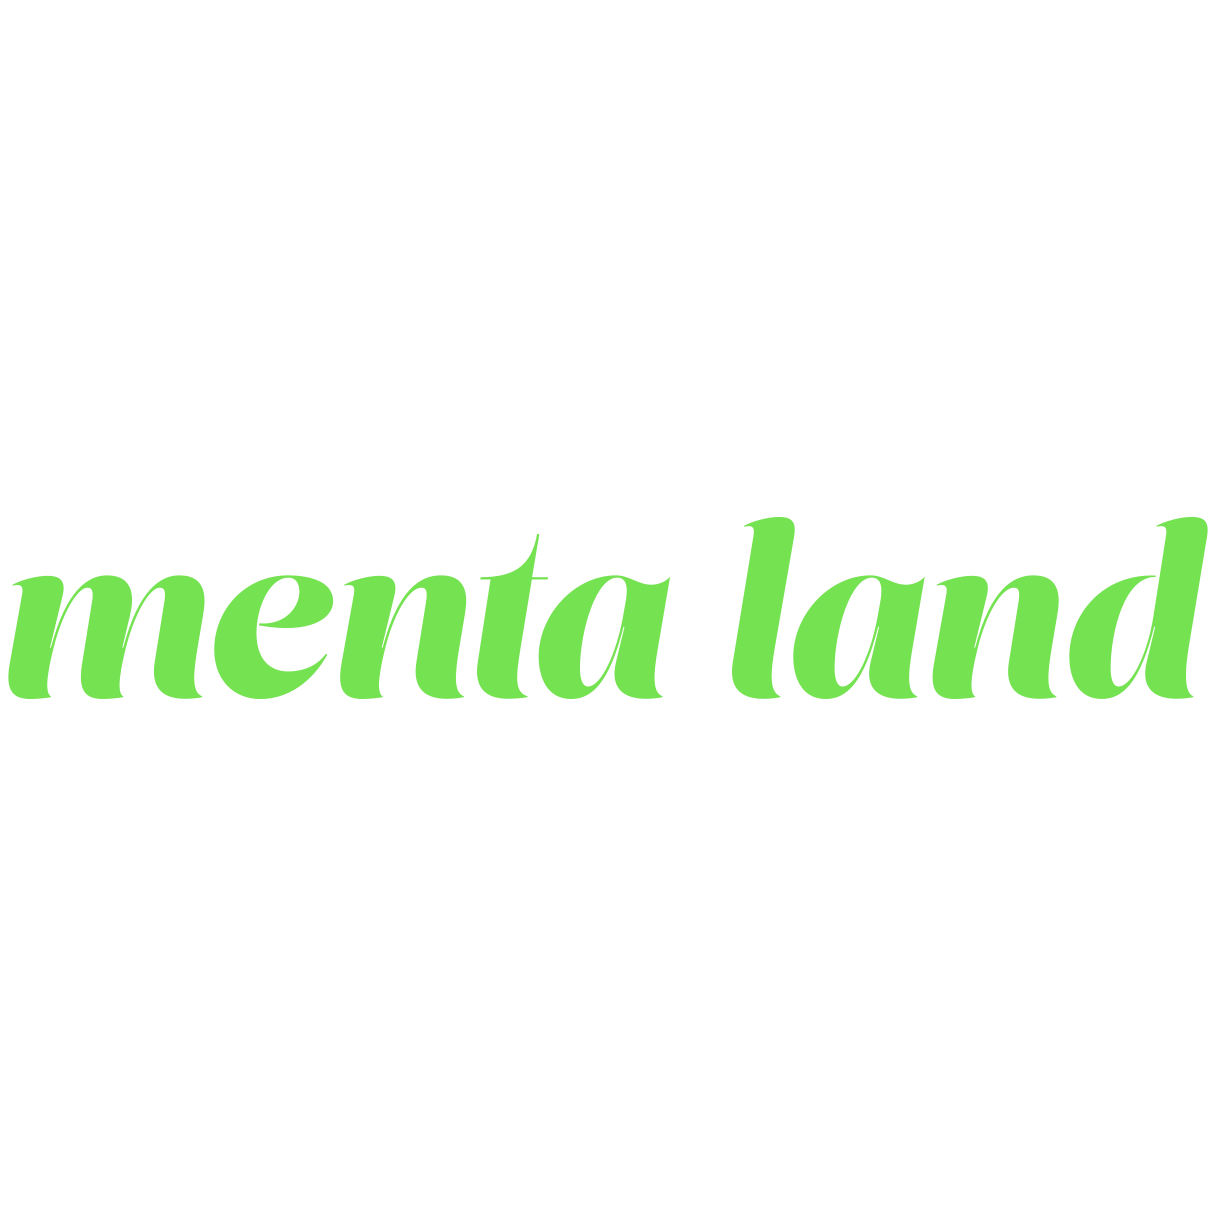 Menta Land News #02  Rumo ao metaverso 🚀 - by Bia Pattoli